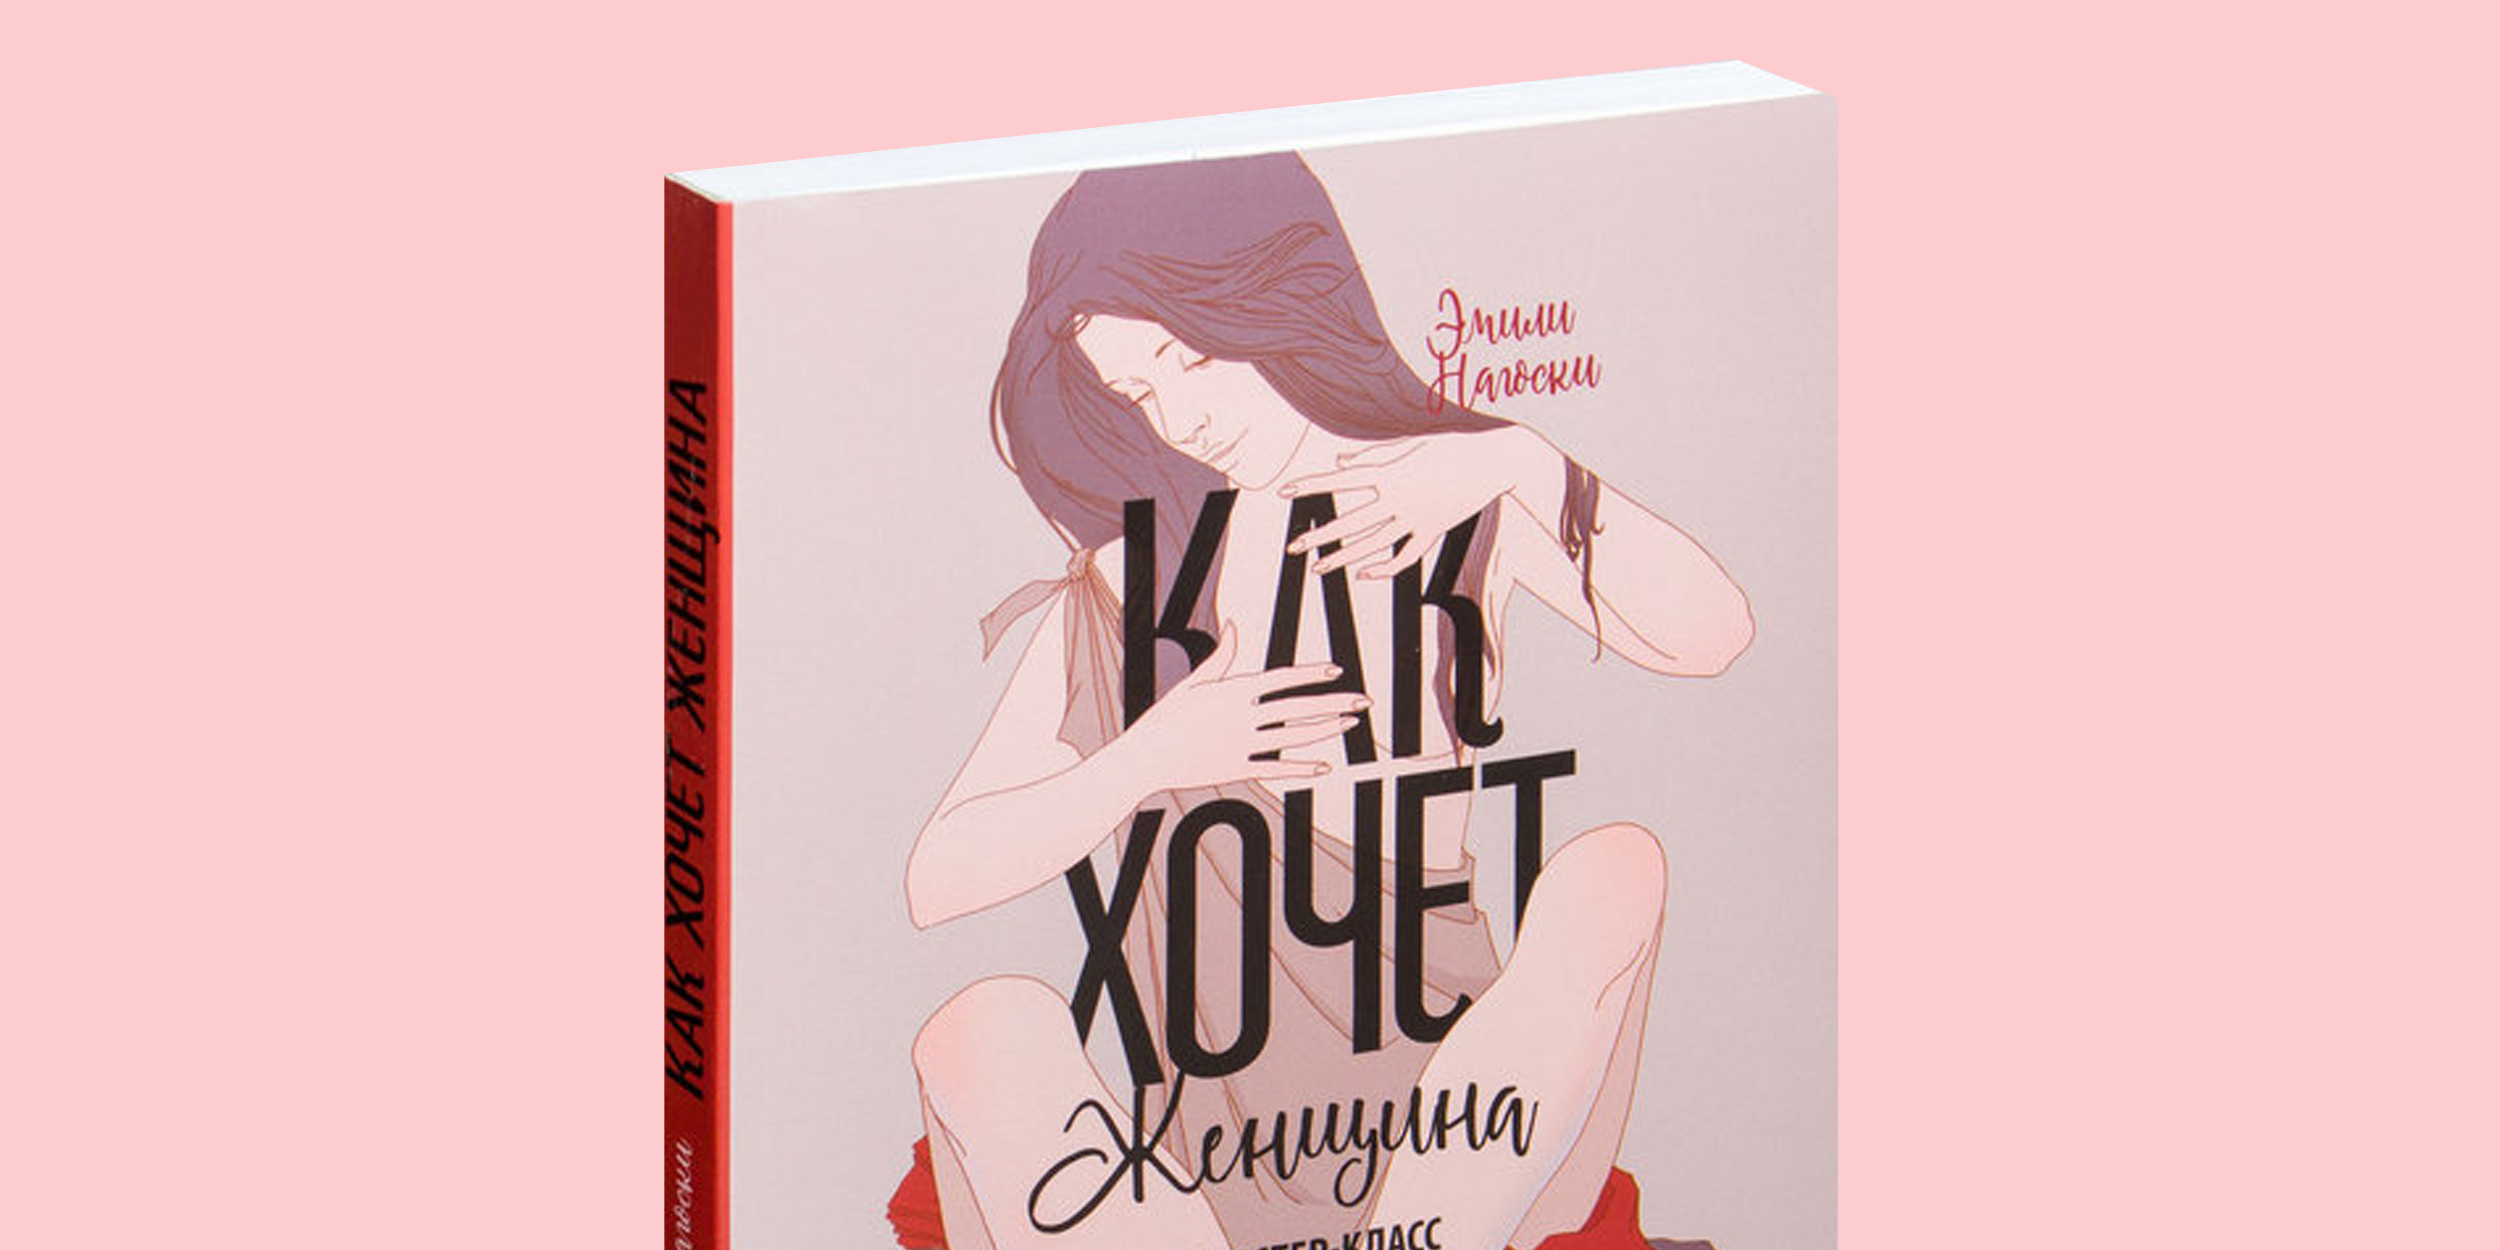 Секс, ложь и фото (сборник) - Светлана Алешина, скачать книгу бесплатно в fb2, txt, epub, pdf